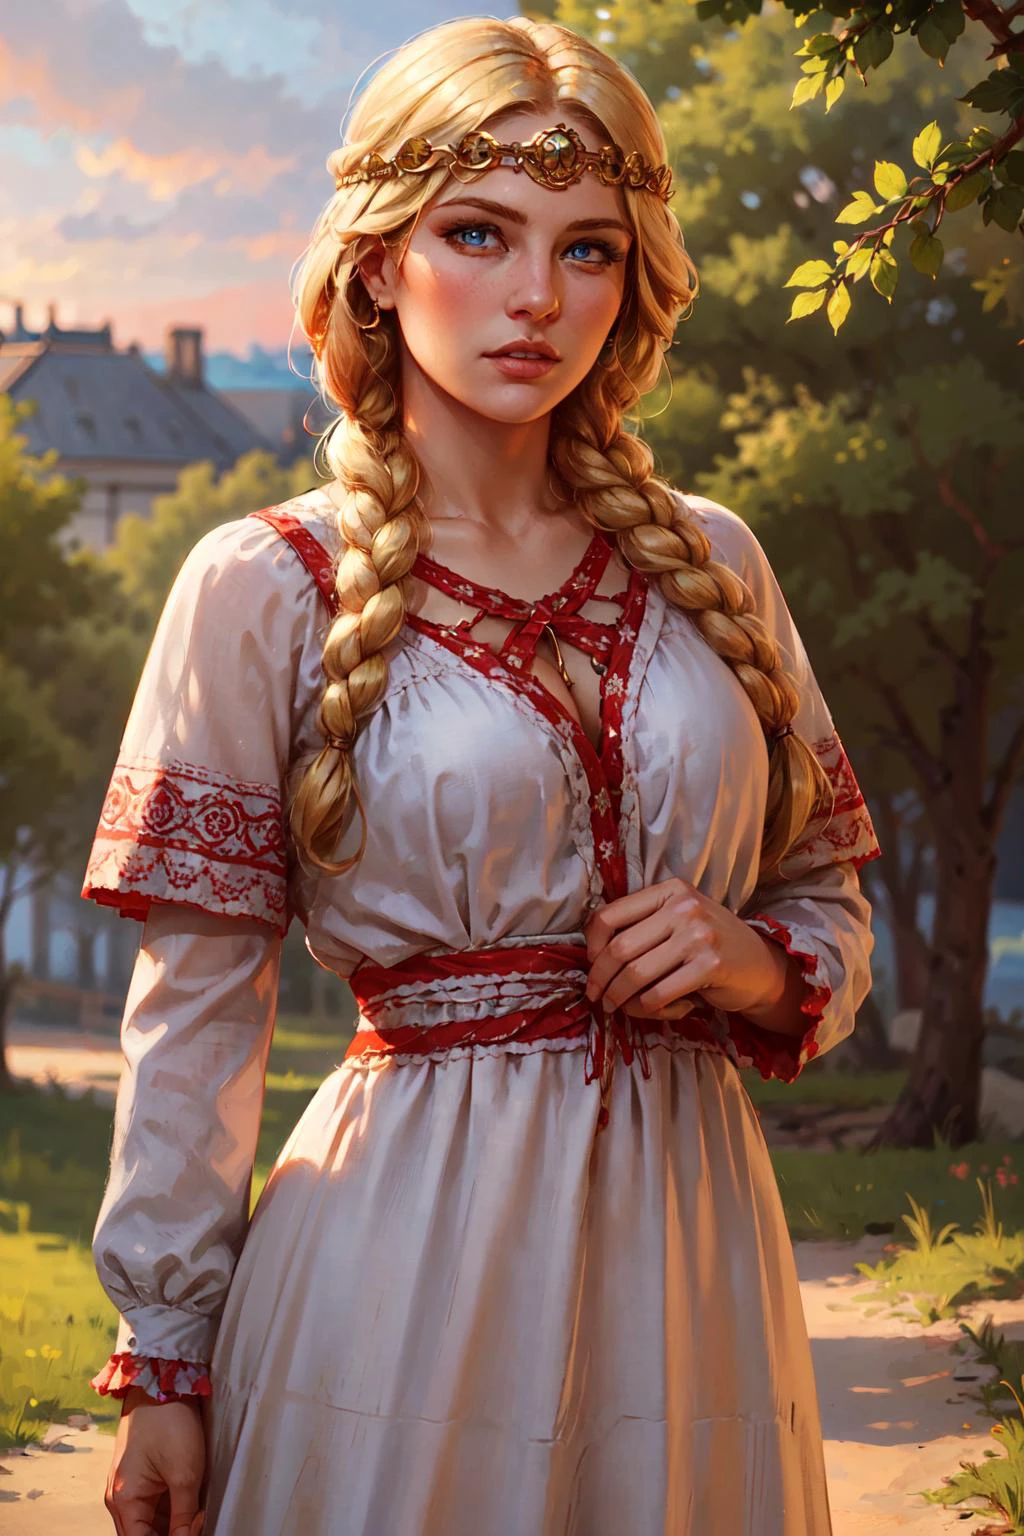 1 Mädchen, schöne Frau, blondes Haar, flechten, leuchtend blaue Augen, weißes Kleid mit verzierten roten Rüschen, Reif, draußen, Realistisch 